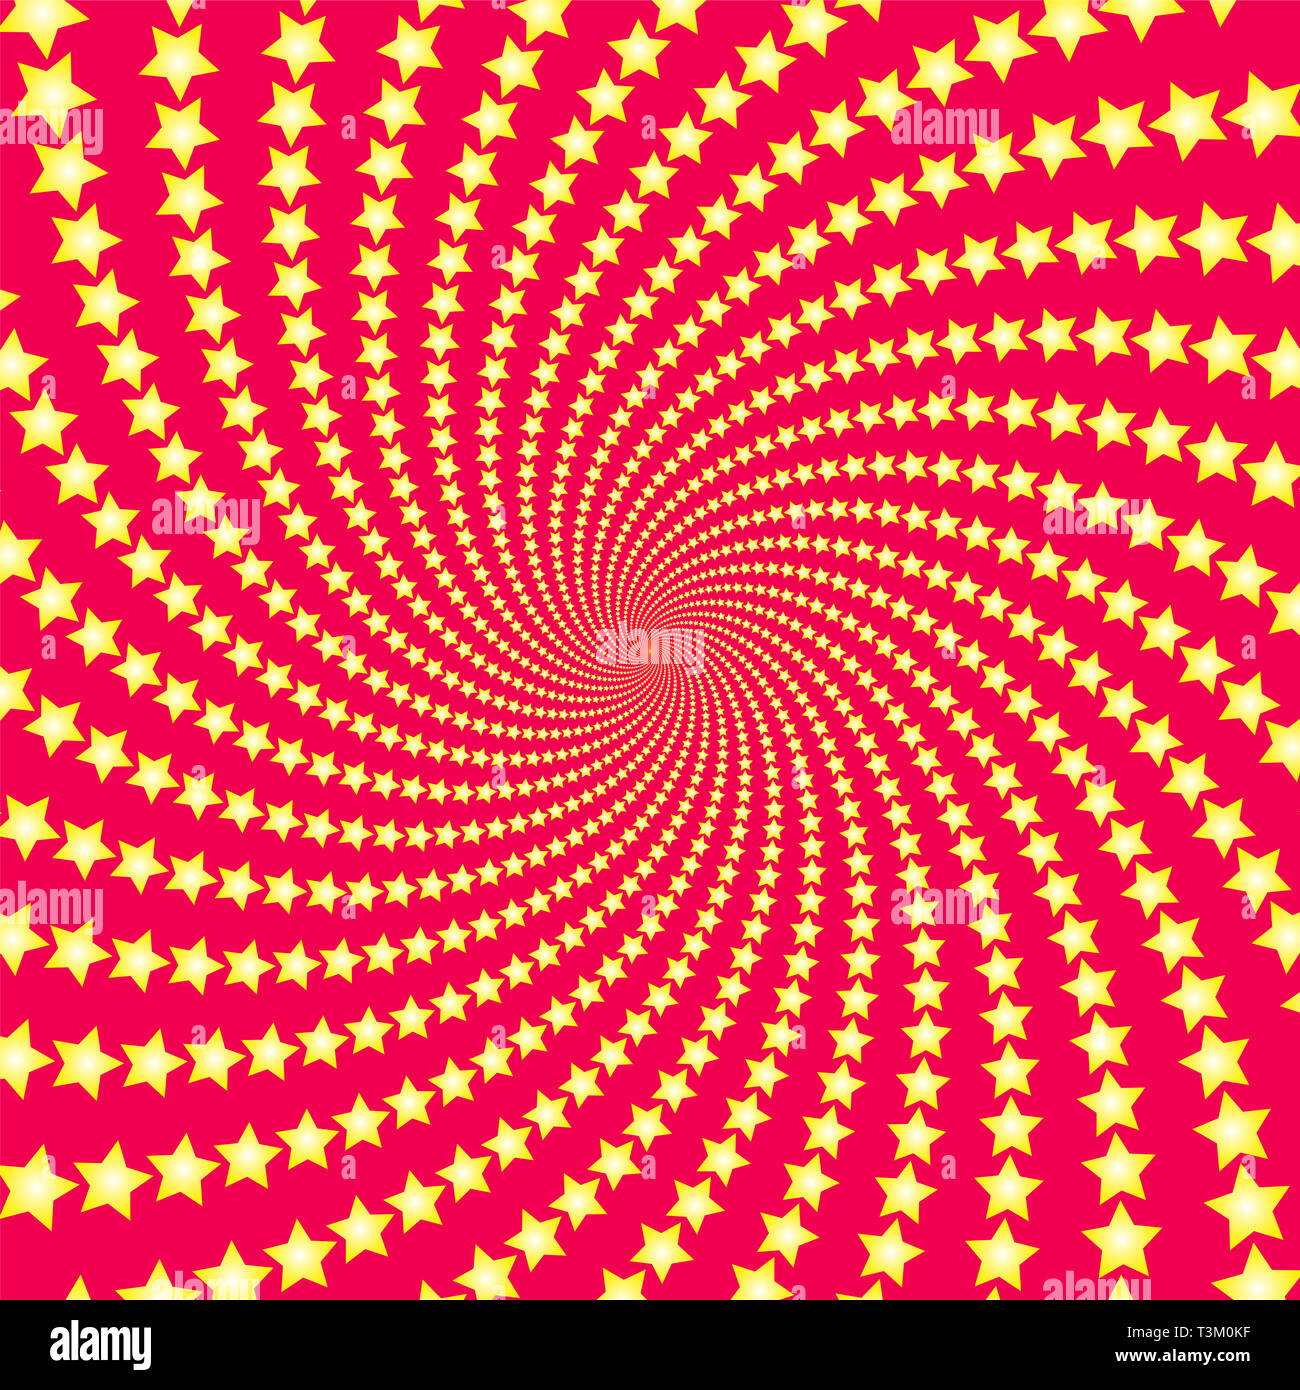 Étoile en spirale. Shooting stars jaune sur fond rouge. Circulaire torsadée illustration fractale, puissant, de façon dynamique, l'hypnose. Banque D'Images